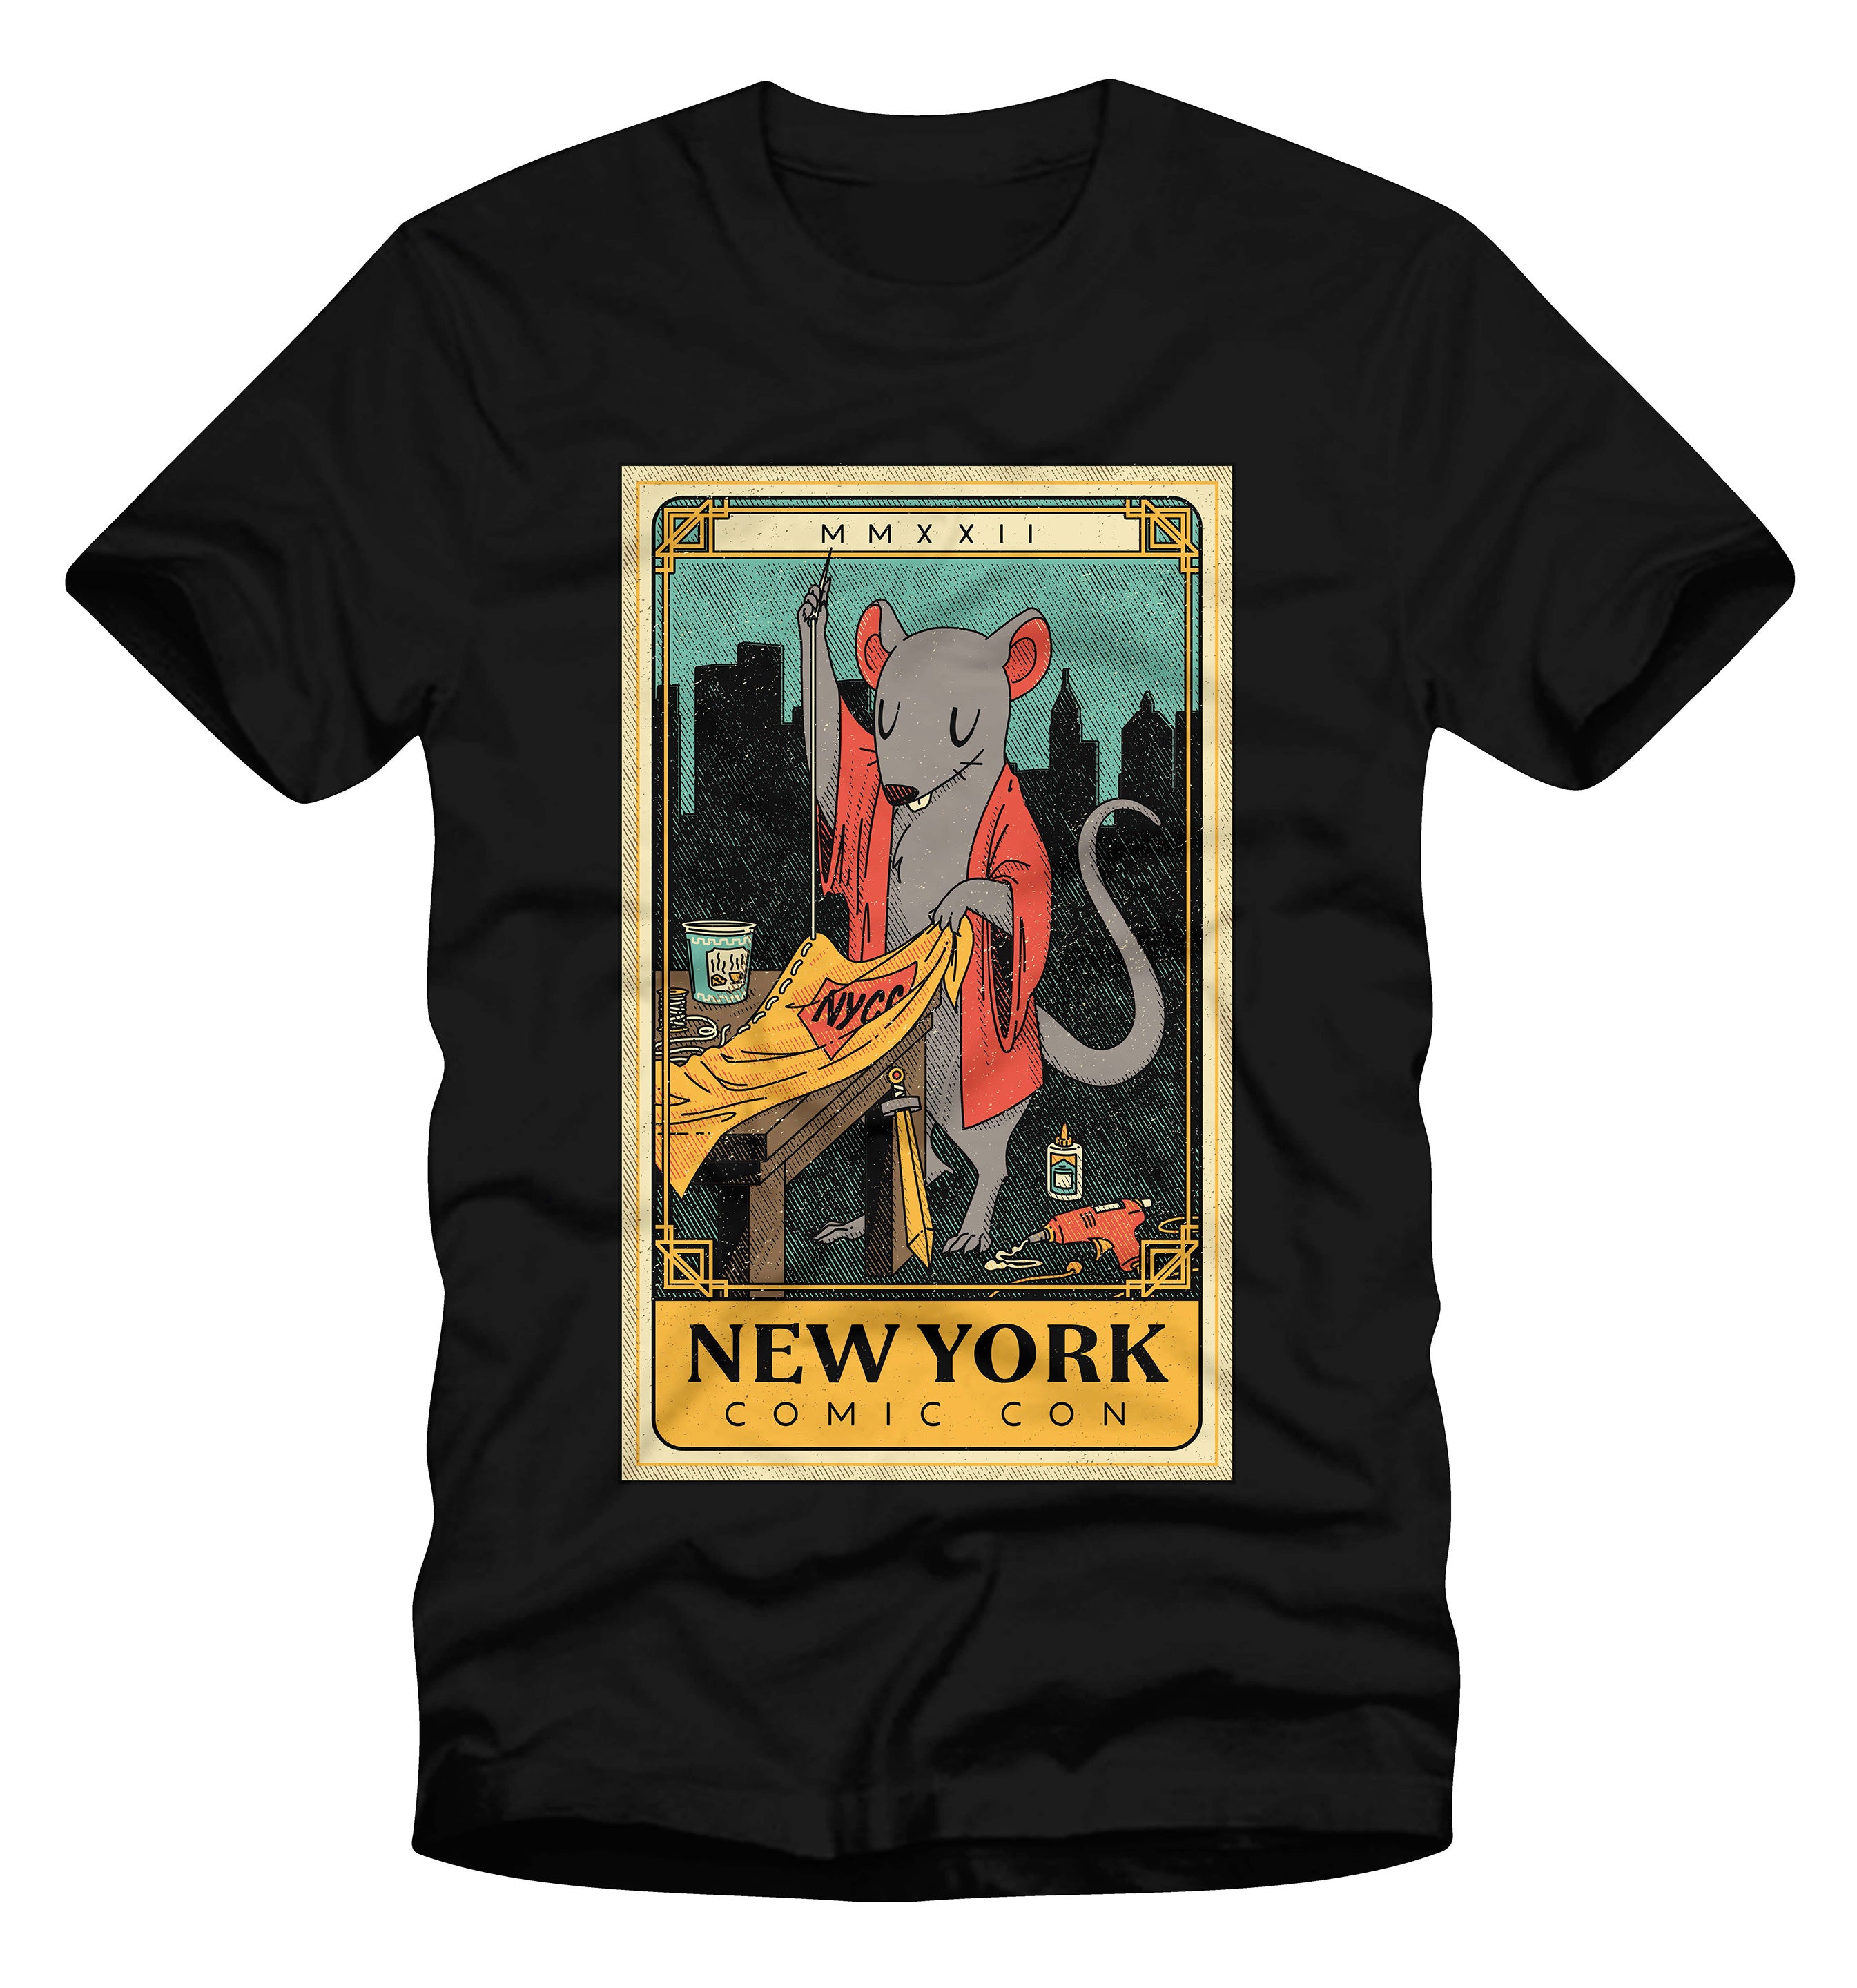 New York Comic Con 2022 exclusive merchandise